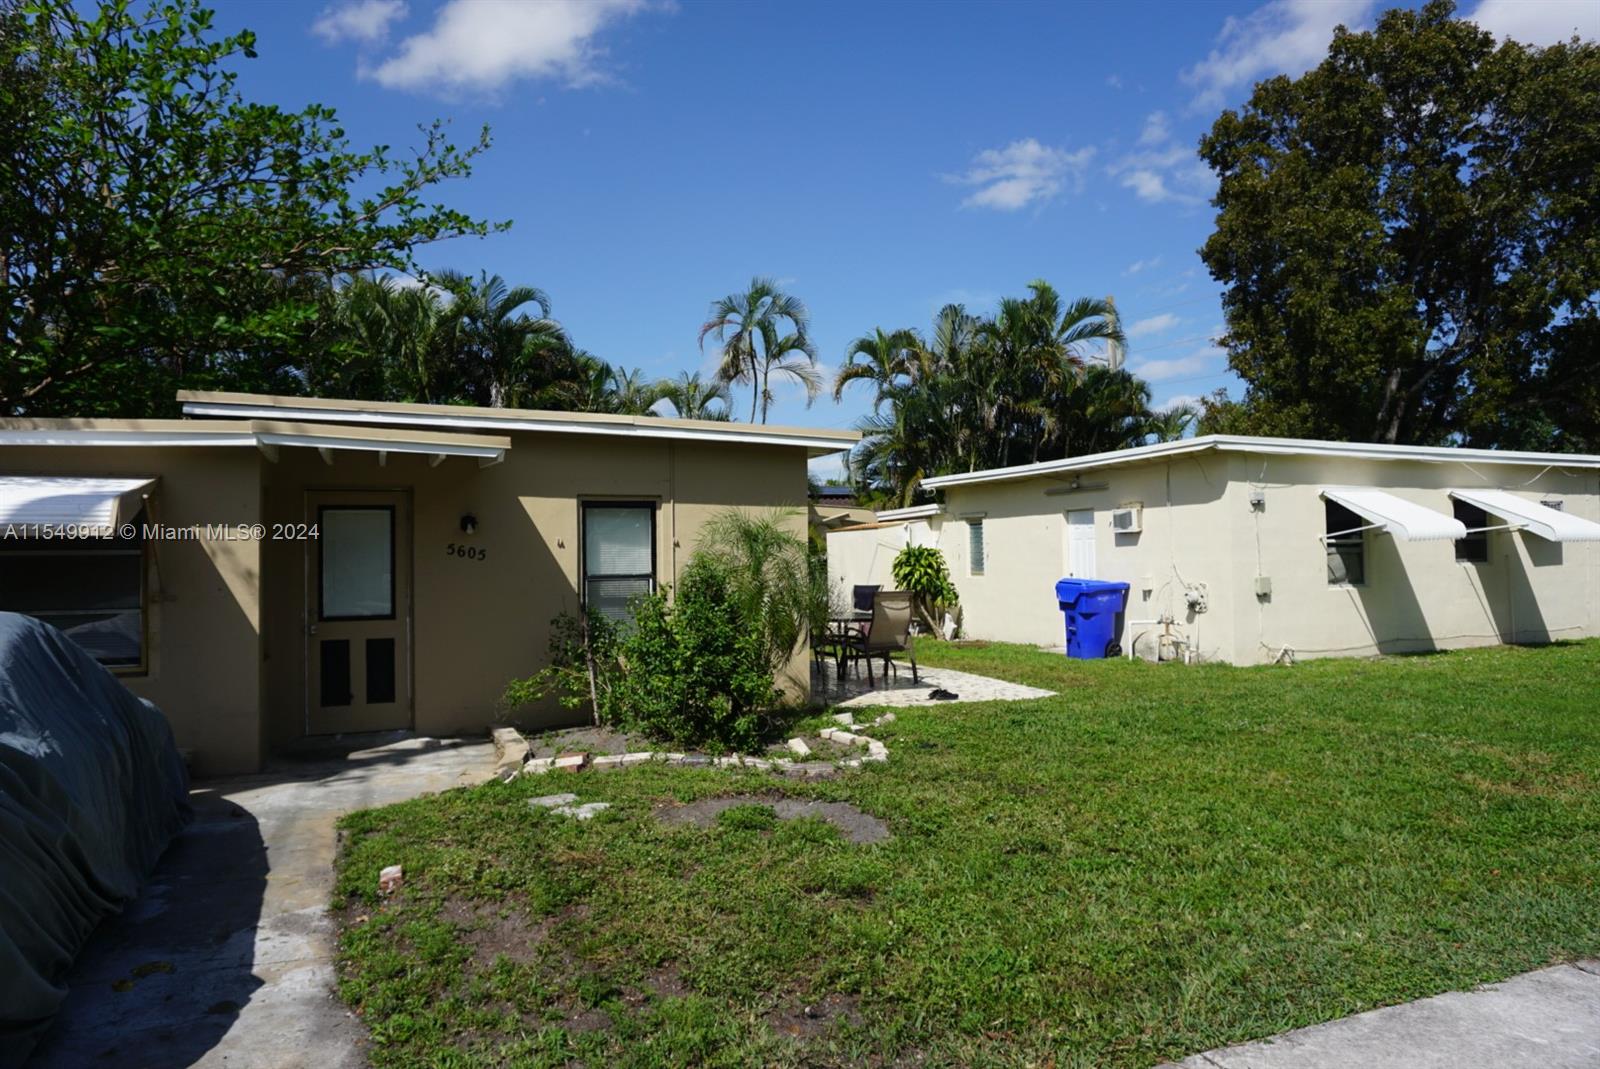 Rental Property at 5605 Taylor St, Hollywood, Broward County, Florida -  - $625,000 MO.